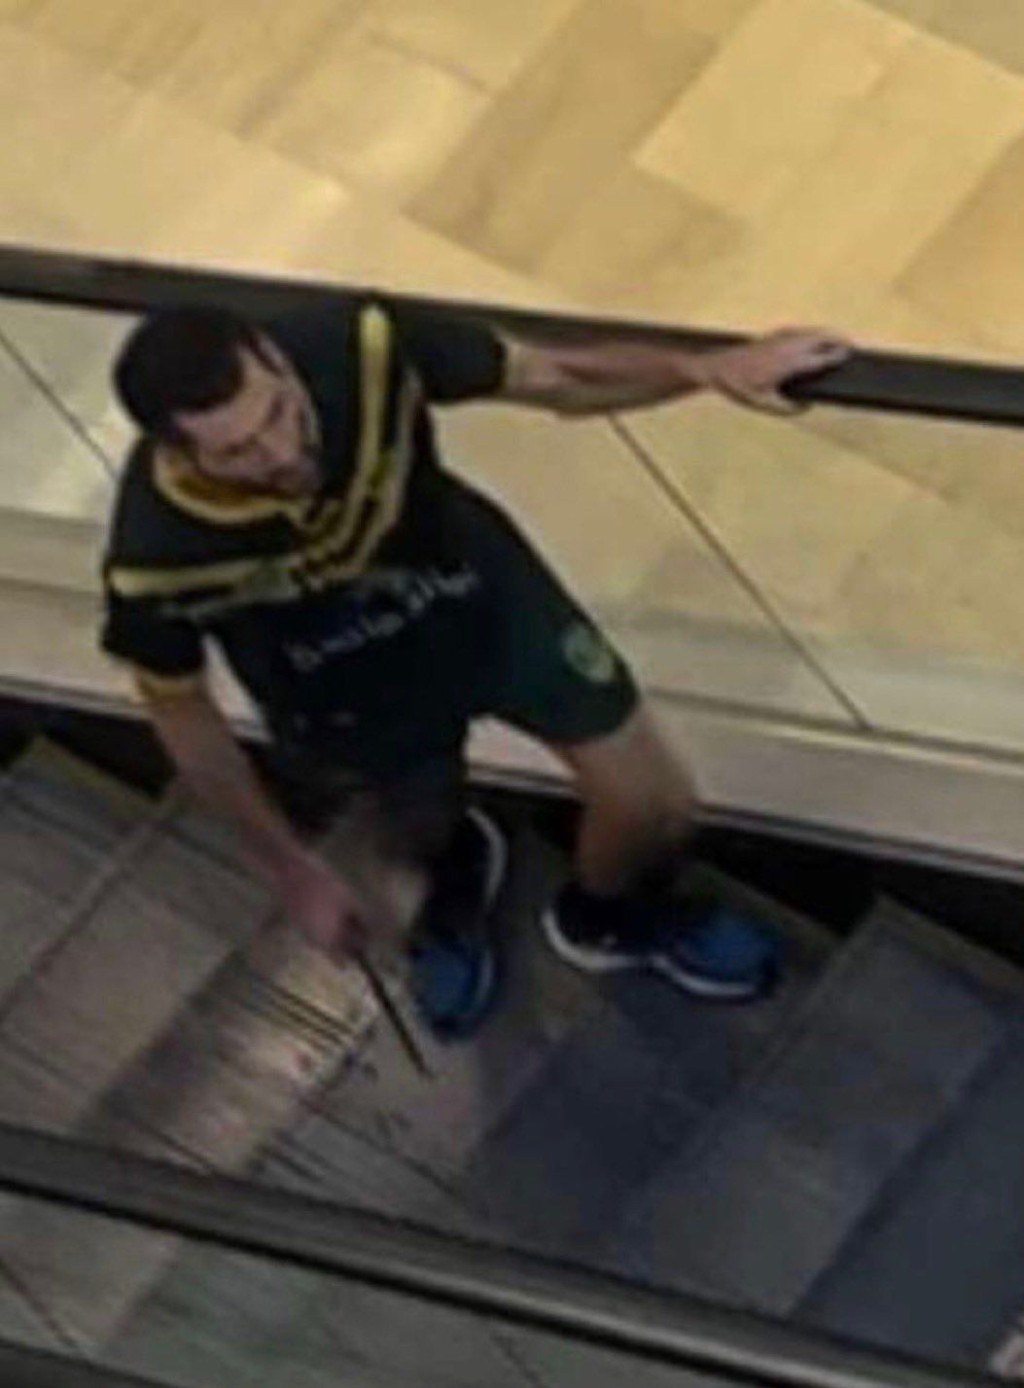 影片顯示男子在購物中心內持刀在扶手電梯上奔跑。